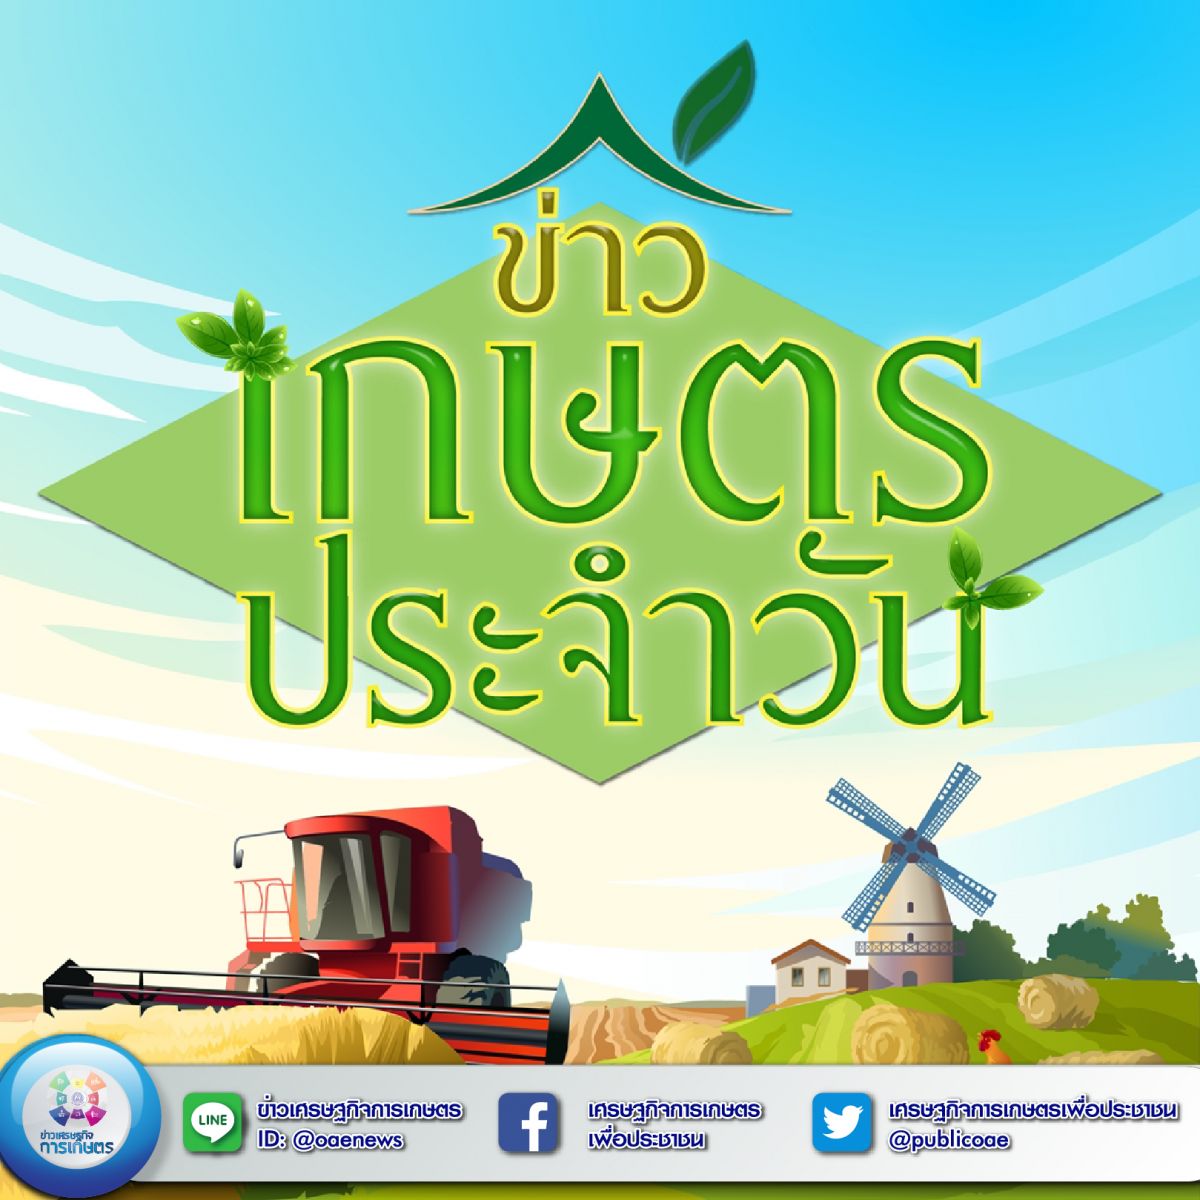 สรุปหัวข้อข่าวด้านการเกษตรที่สำคัญ นสพ.ประจำวันที่ 28 มีนาคม 2563